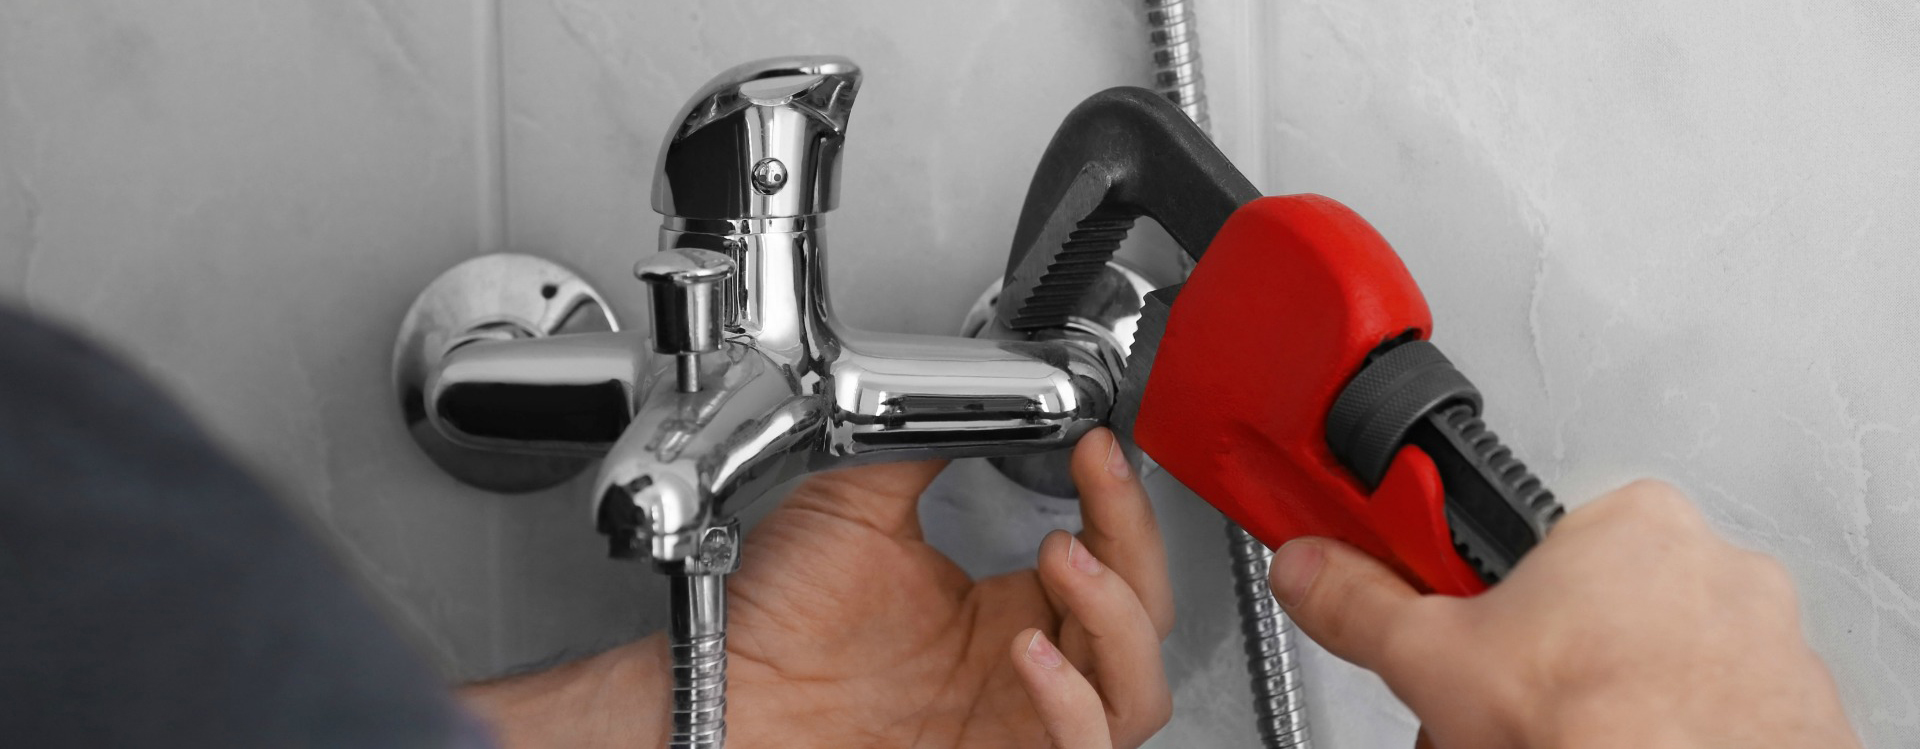 Как произвести ремонт переключателя смесителя для ванной своими руками